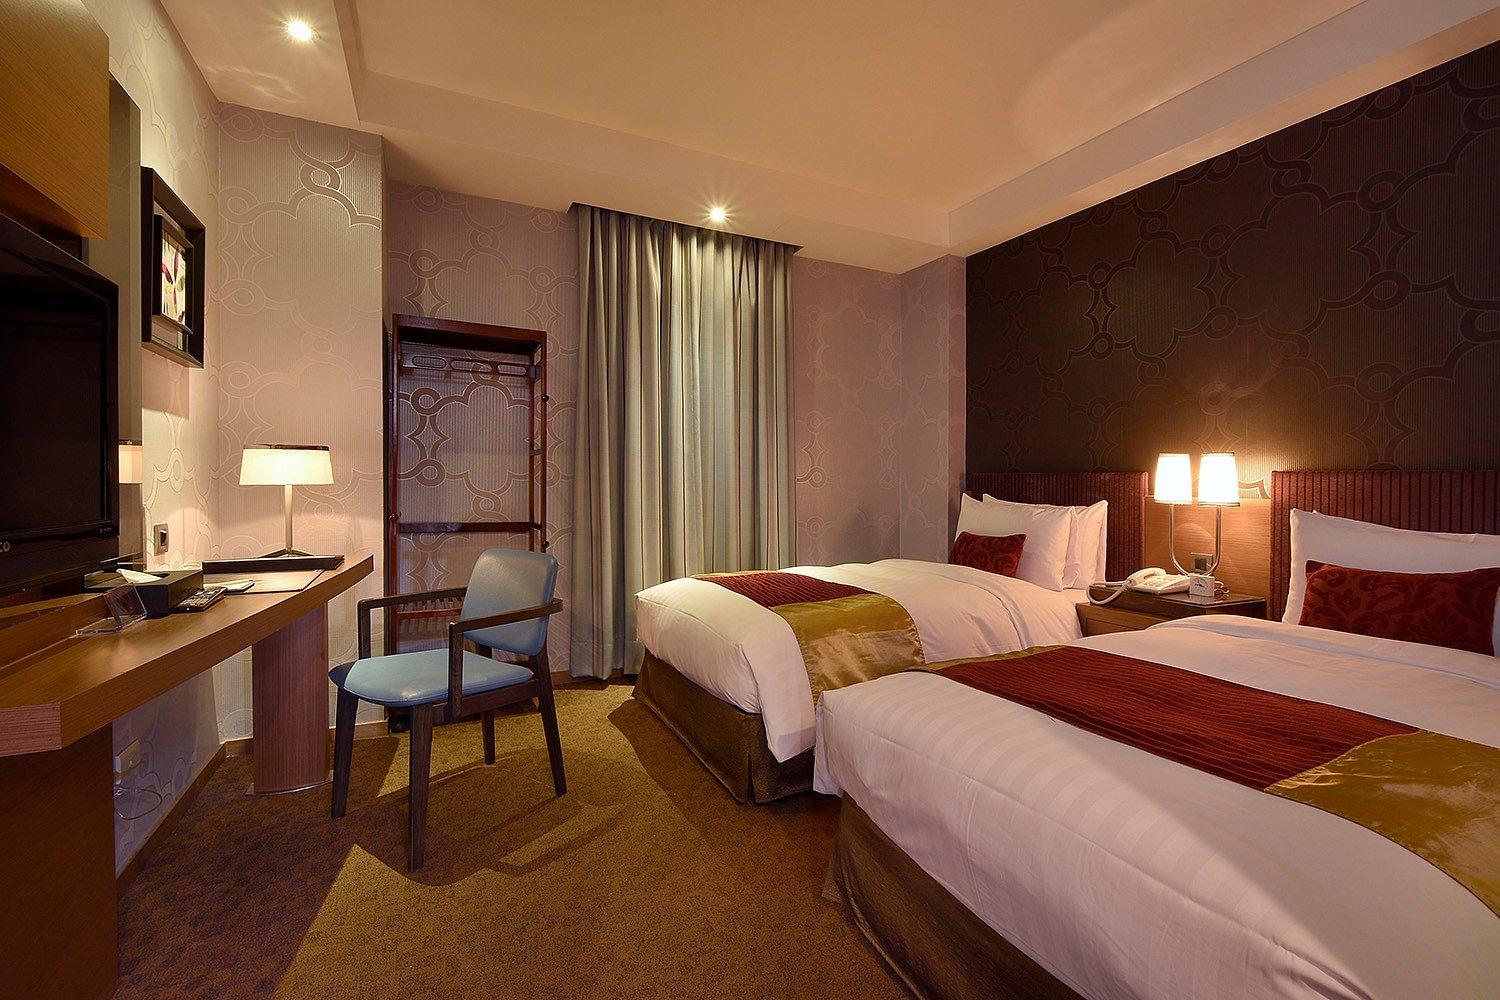 익스퀴지트 트윈룸 (창문 없음) (조식 없음) (Exquisite Twin Room (No Window) (No Breakfast)) - Green World Hotel - Mai-Nanjing